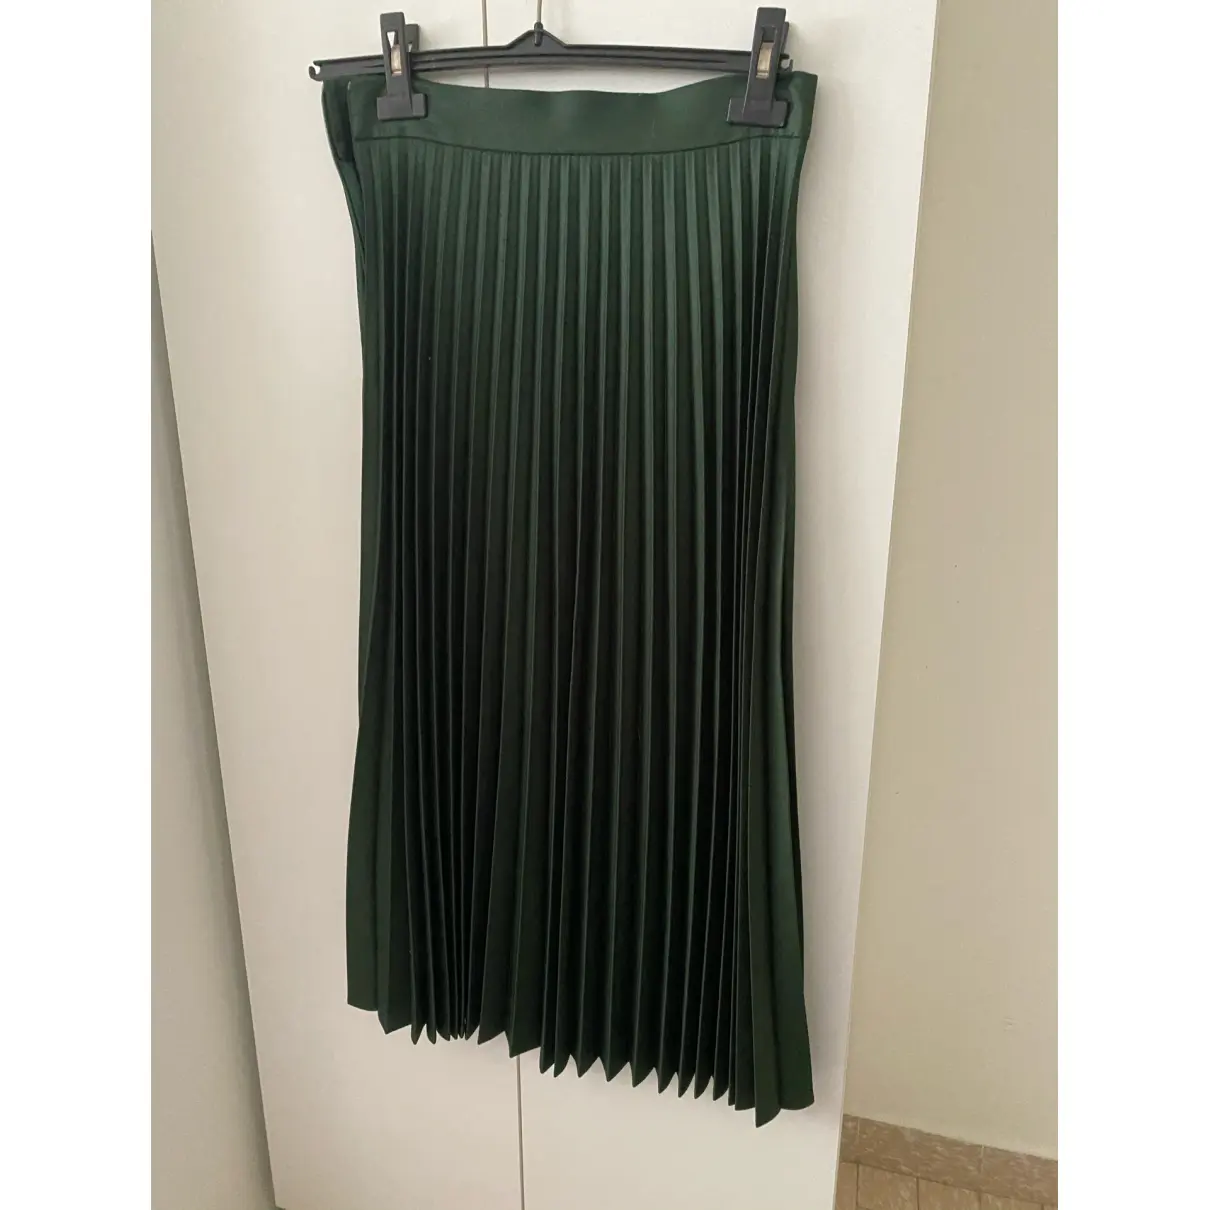 Buy Zara Mid-length skirt online